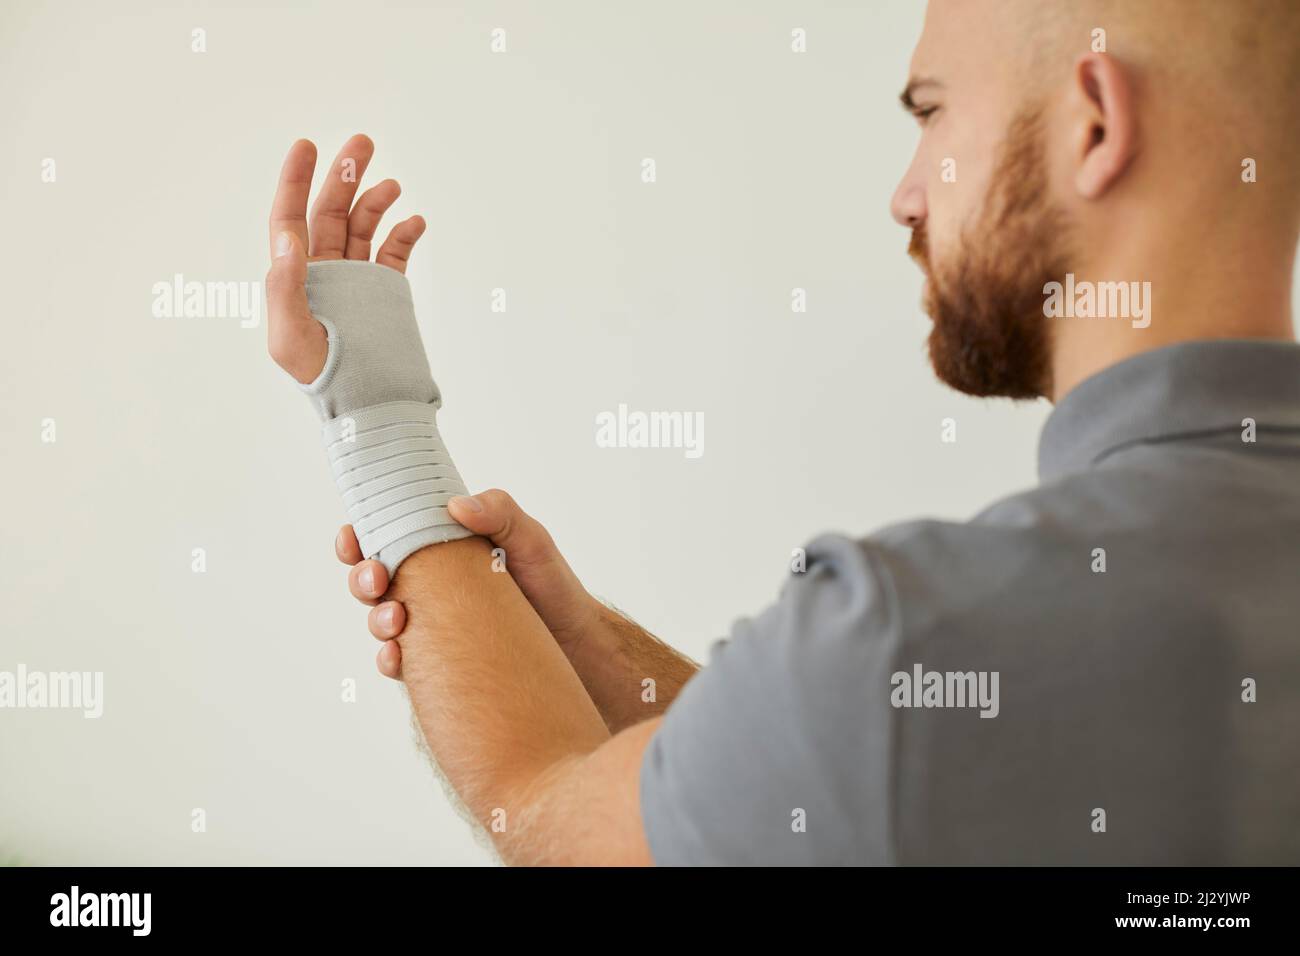 Der Mensch verwendet medizinische Verbandsmaterial für das Handgelenk als vorbeugende Maßnahme für Sport oder körperliche Aktivität. Stockfoto